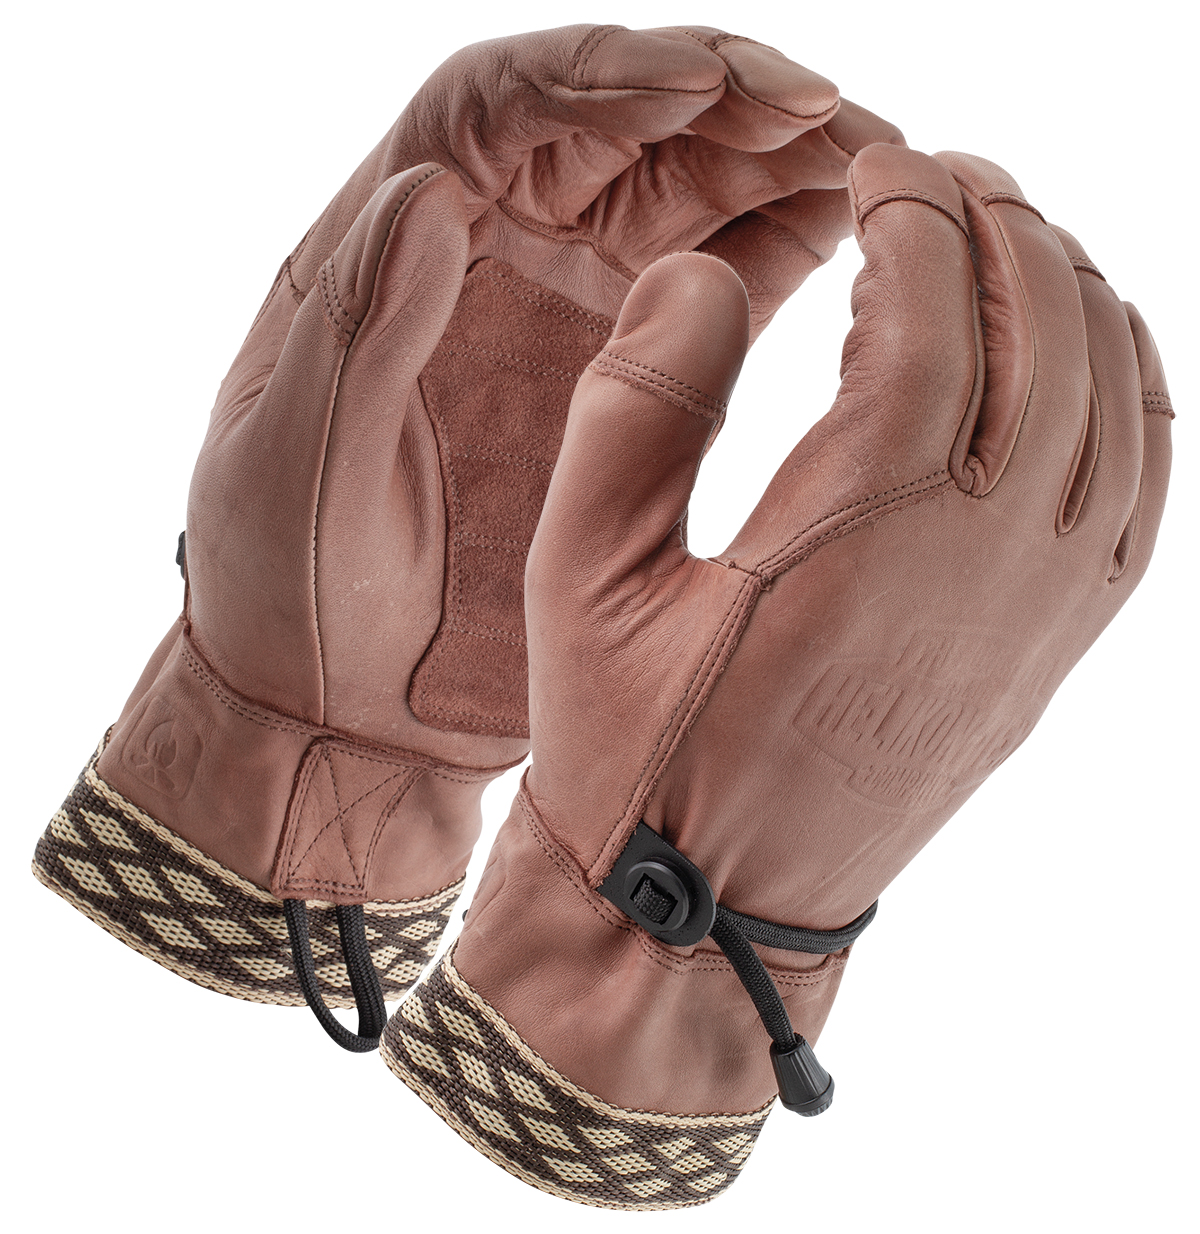 Helikon-Tex WOODCRAFTER GLOVES Outdoor Leder Finger Handschuhe U.S Brown 